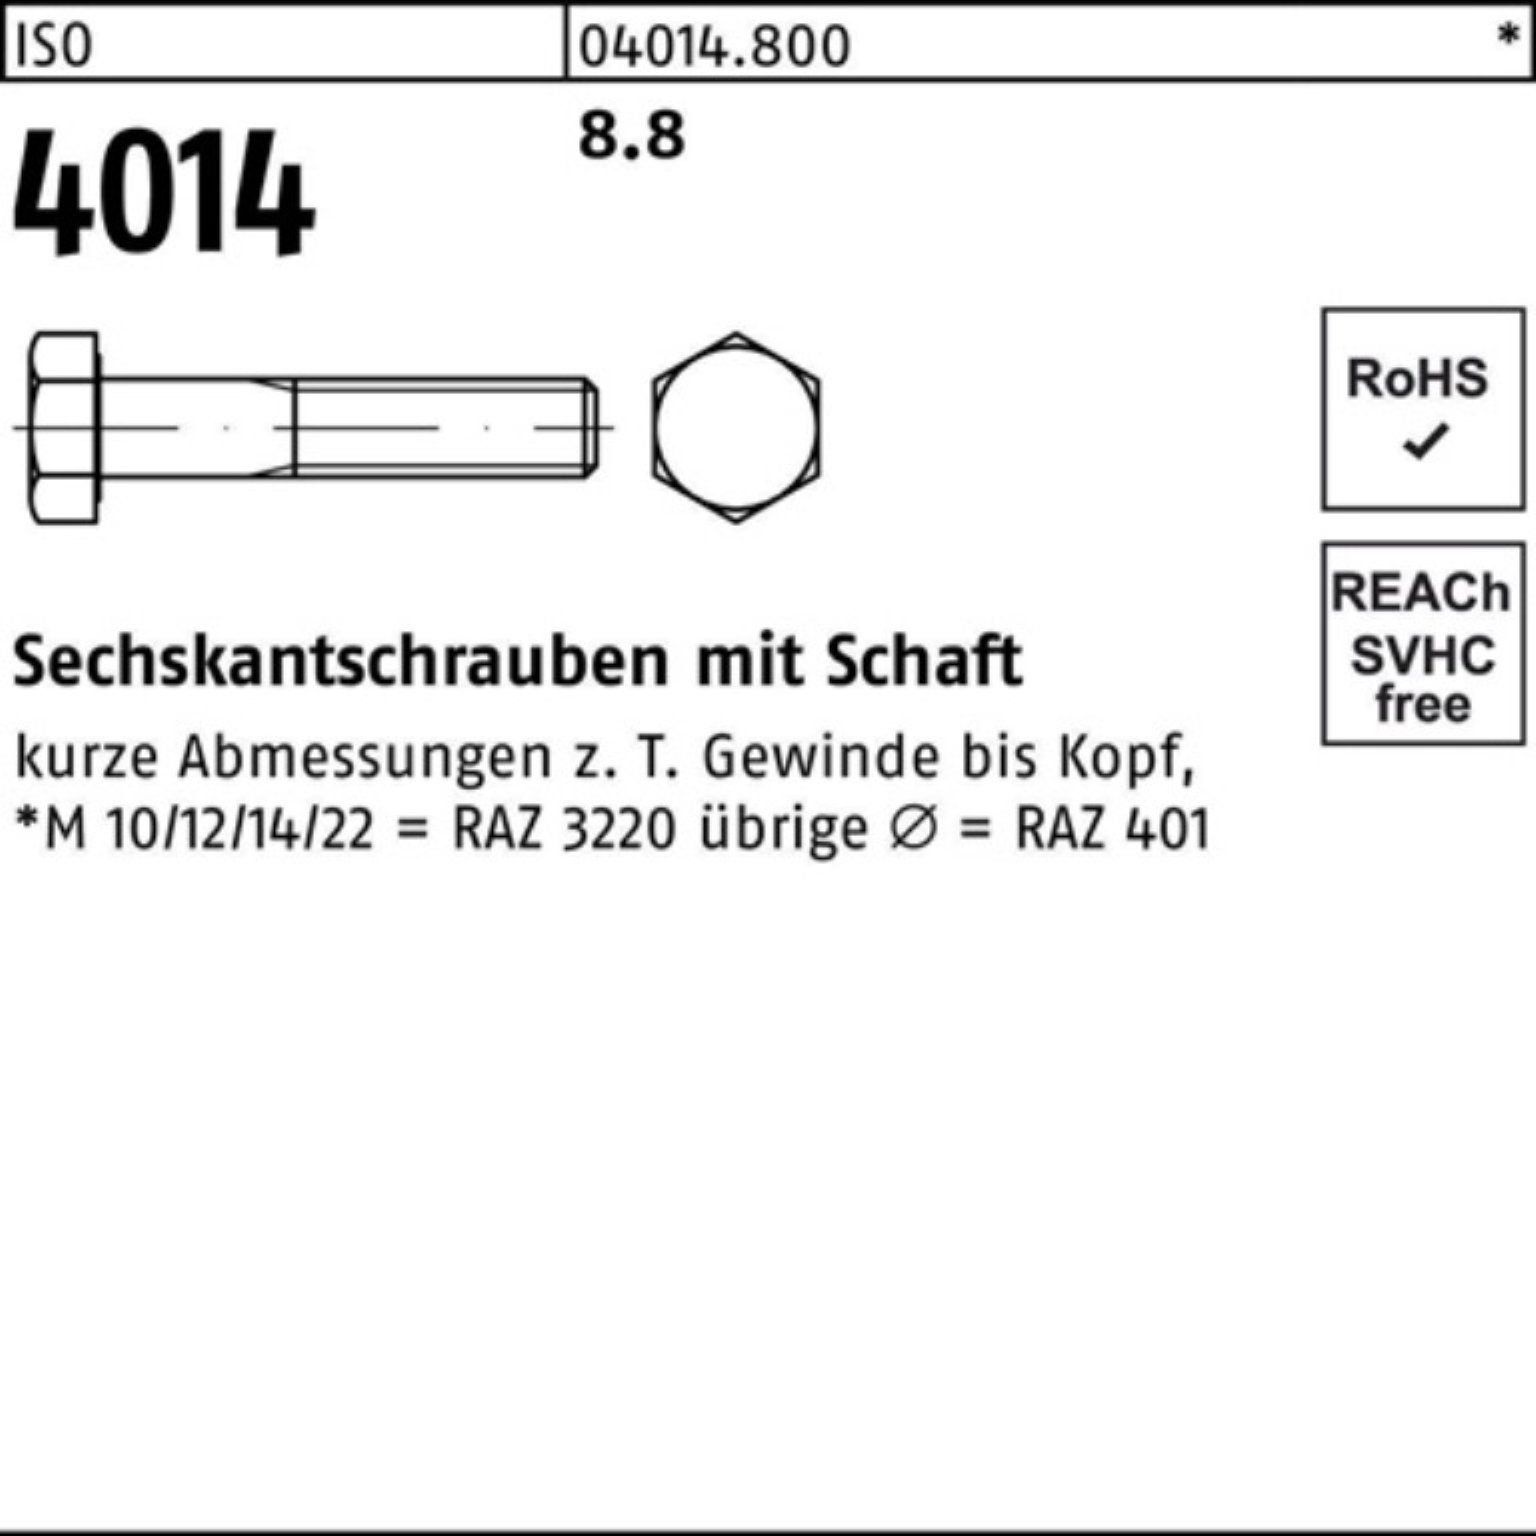 Bufab Sechskantschraube 200er Sechskantschraube Stück Pack 4014 M8x ISO ISO 200 8.8 55 Schaft